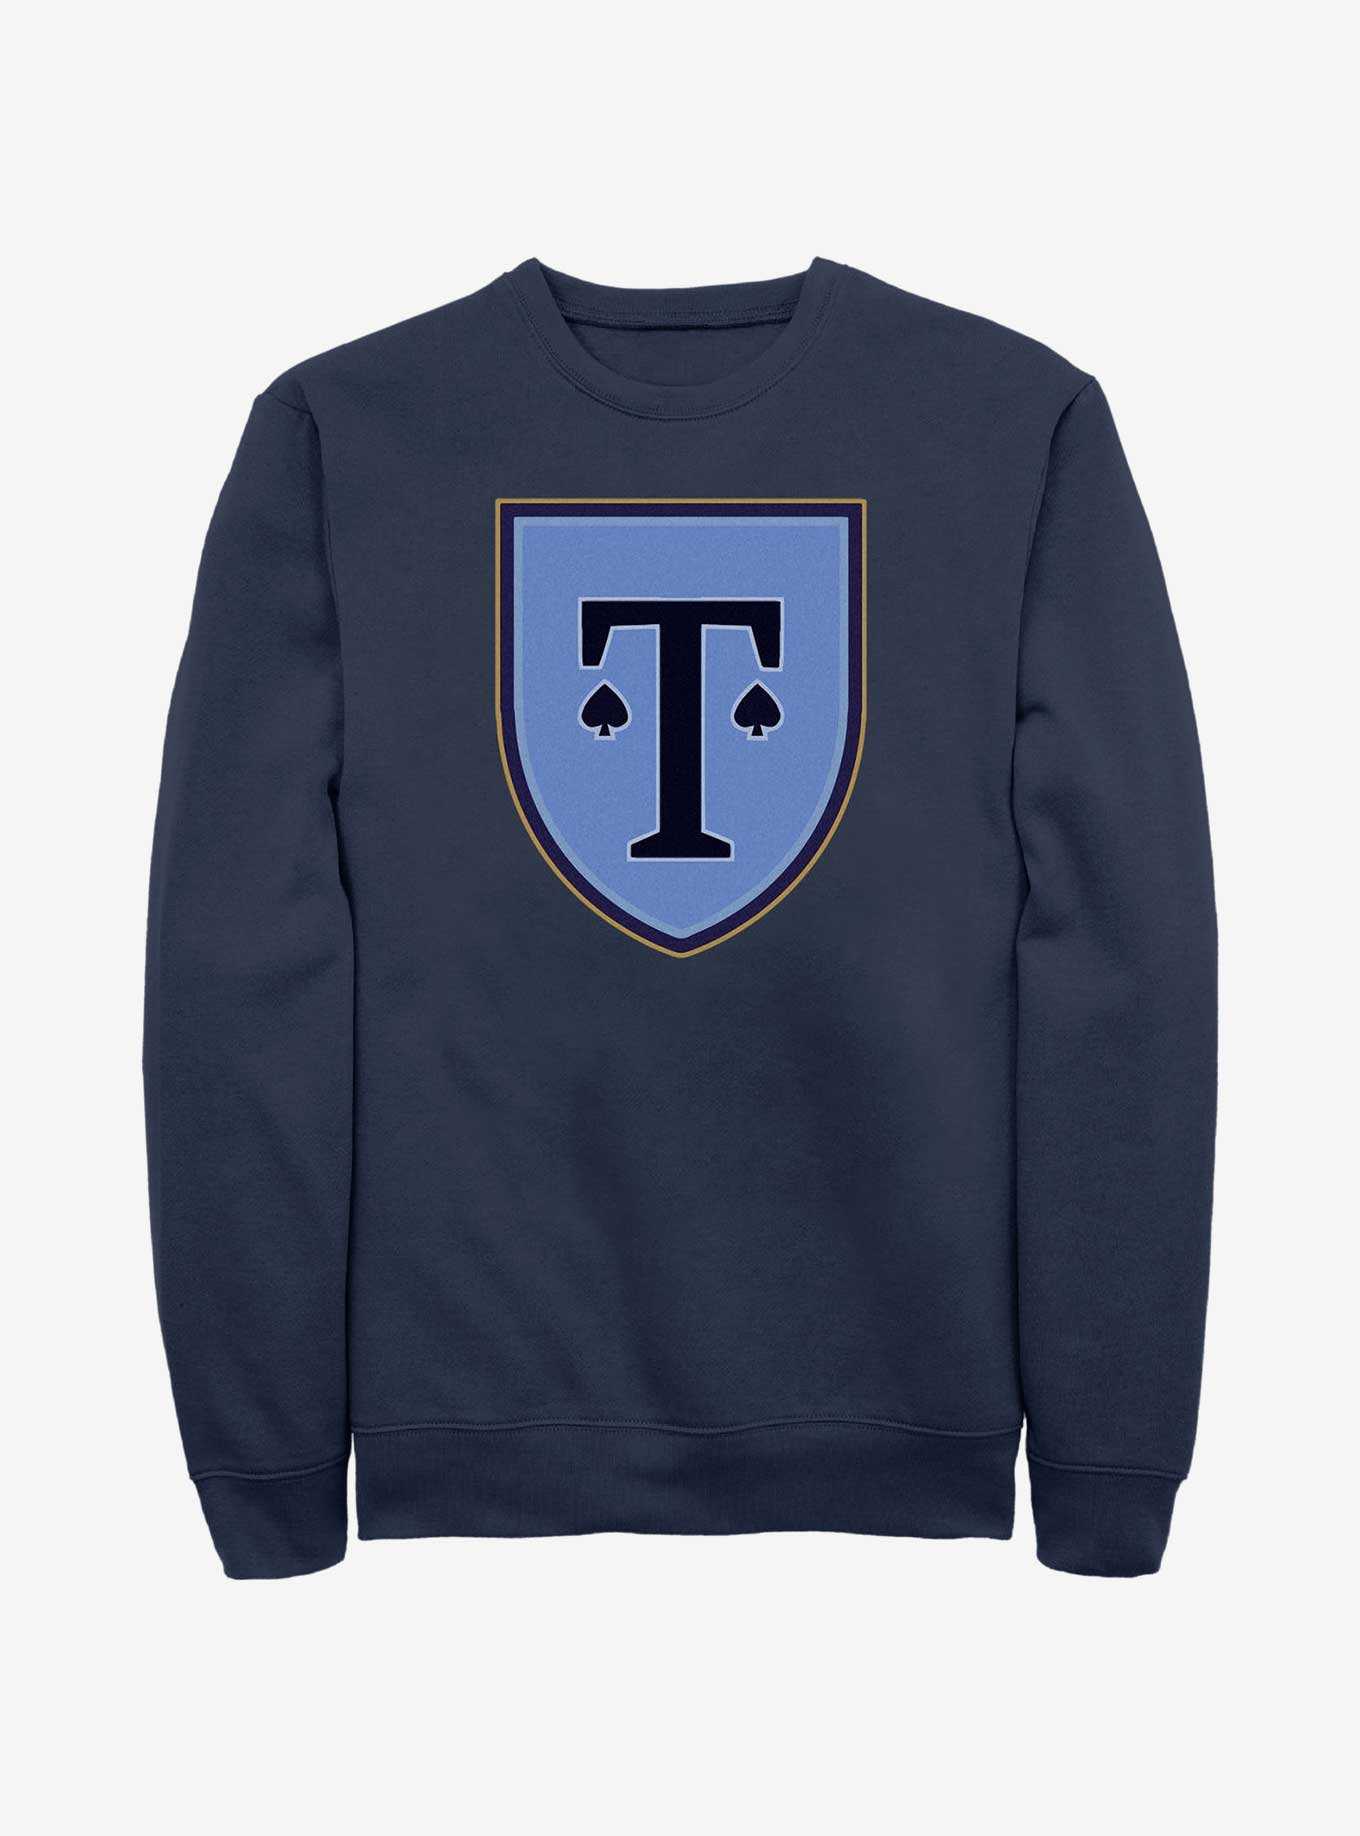 Heartstopper Truham School Crest Sweatshirt, , hi-res